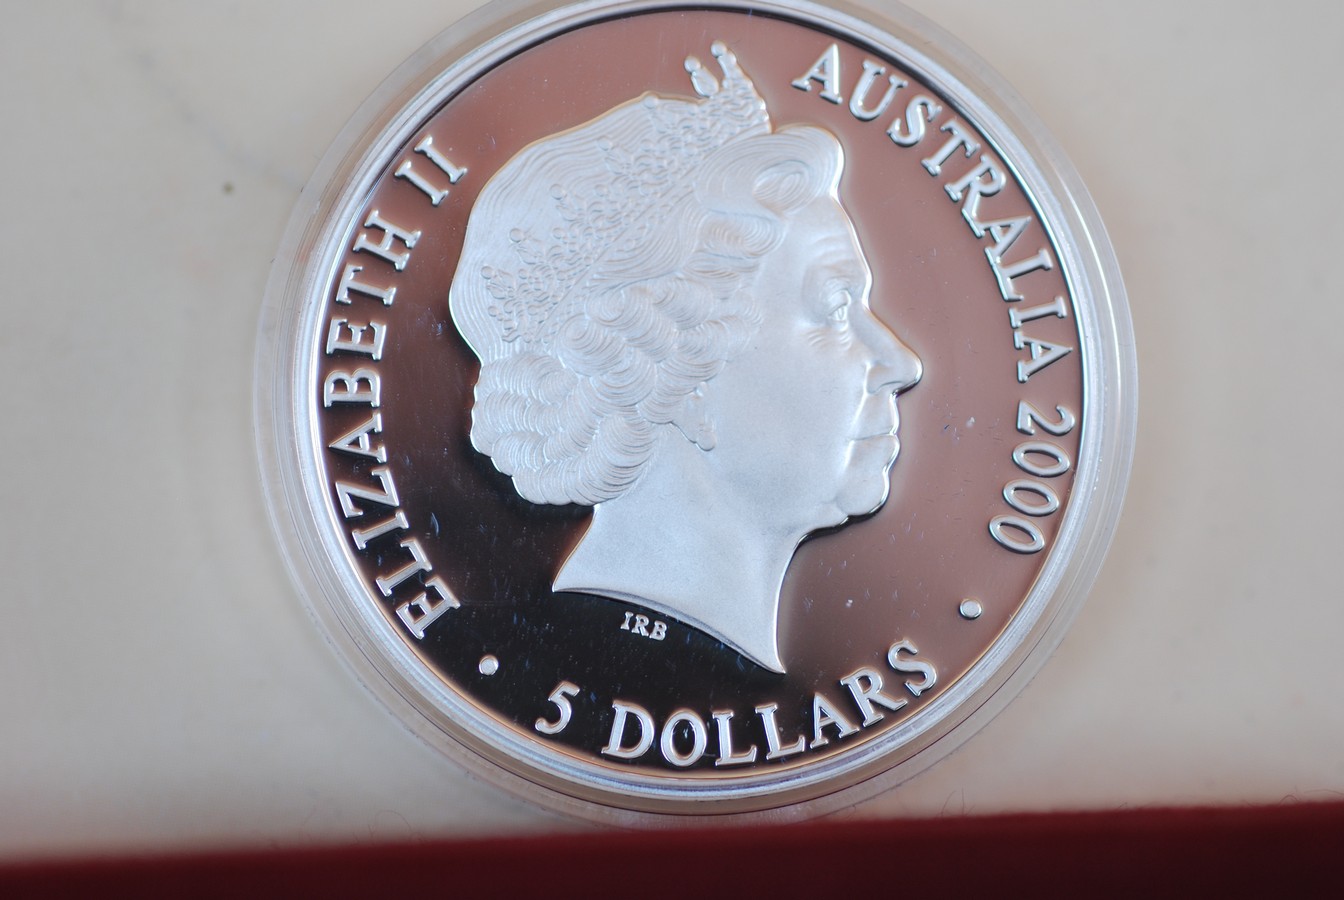 5 dollar Sydney 2000